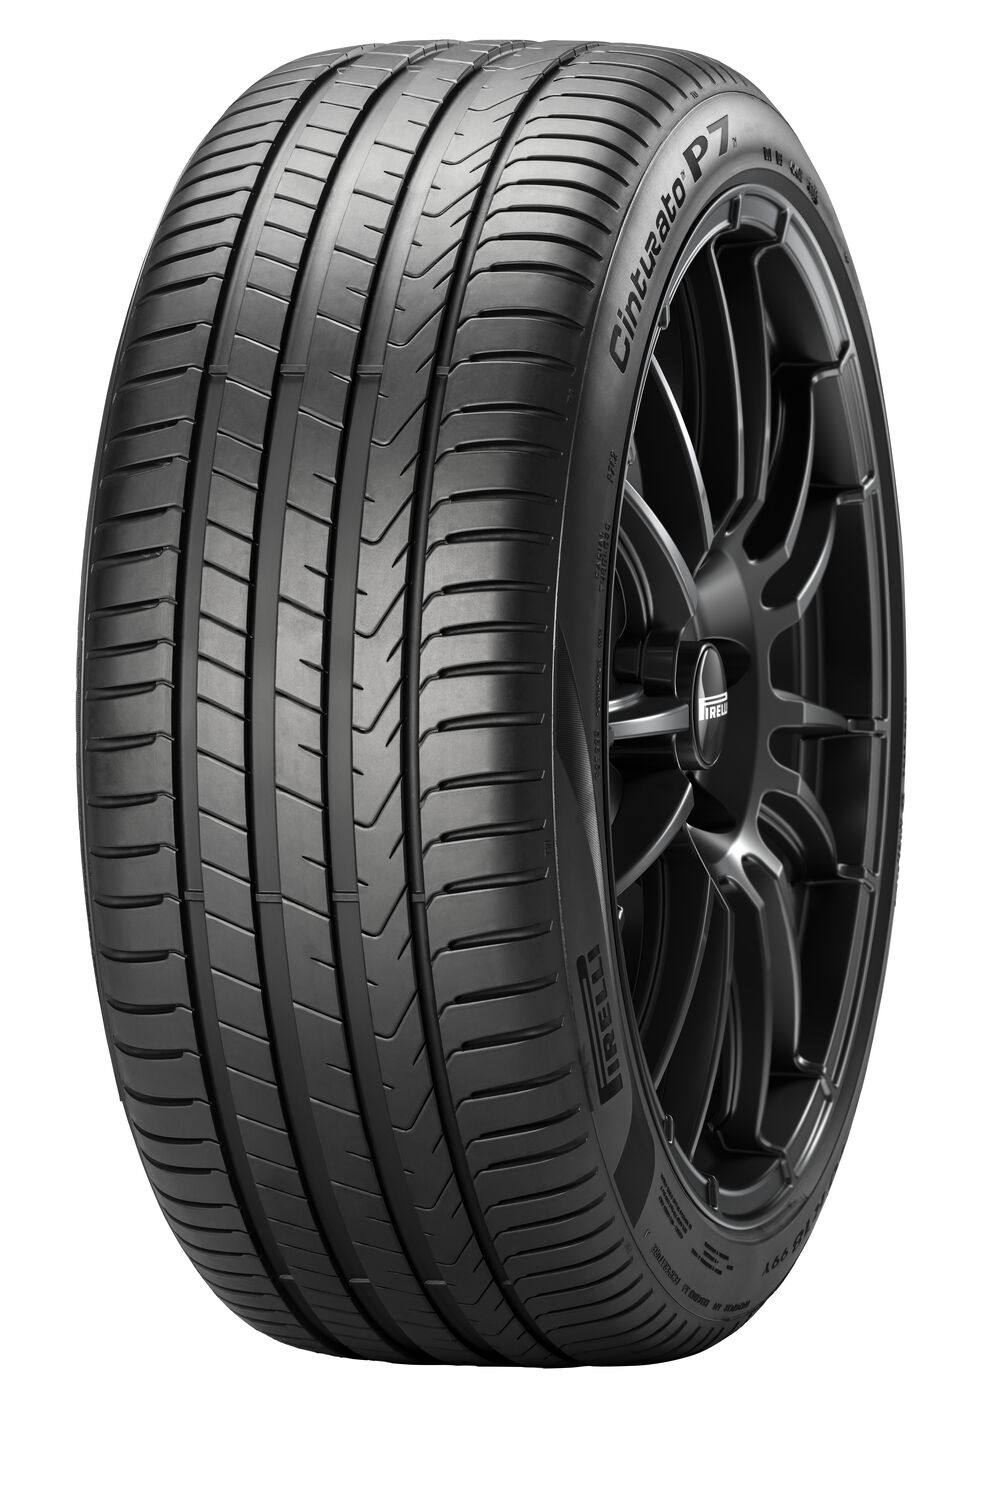 Gomme Nuove Pirelli 245/45 R18 100Y P7C2 XL pneumatici nuovi Estivo